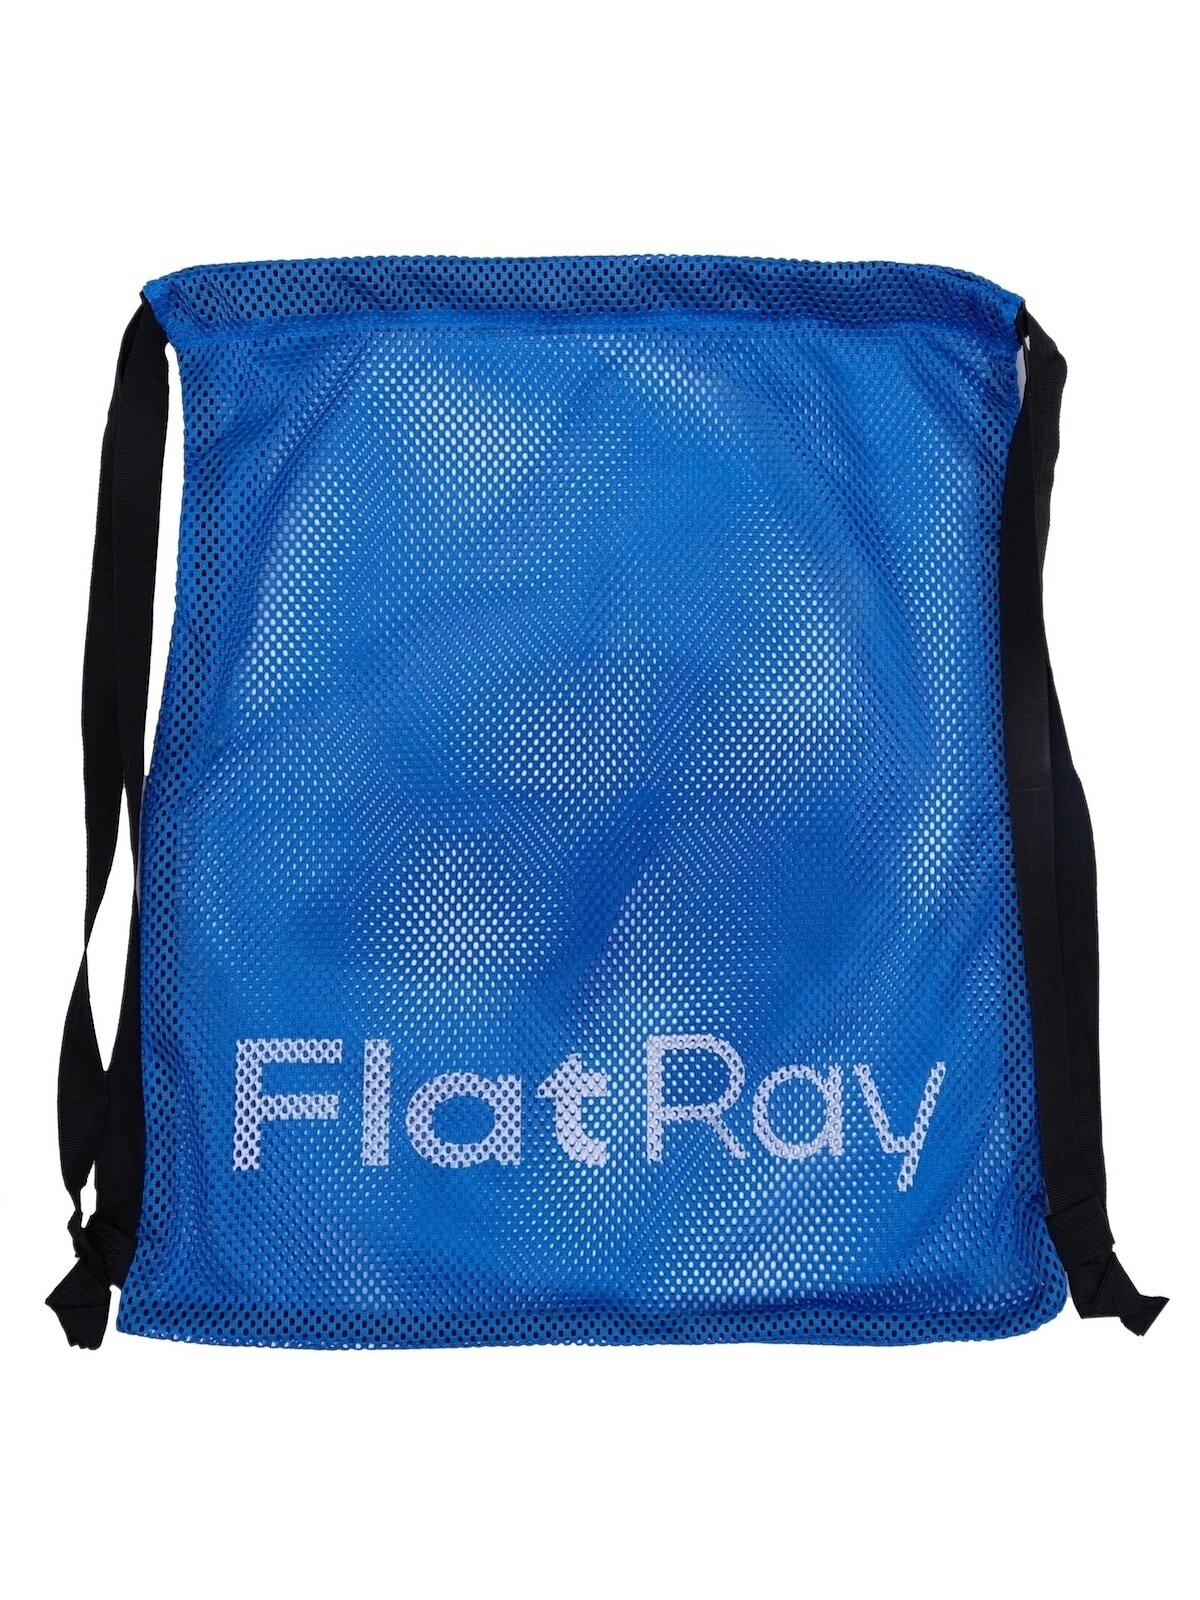 Мешок, сетка для мокрых вещей Flat Ray Mesh Bag 45x38 (синий)